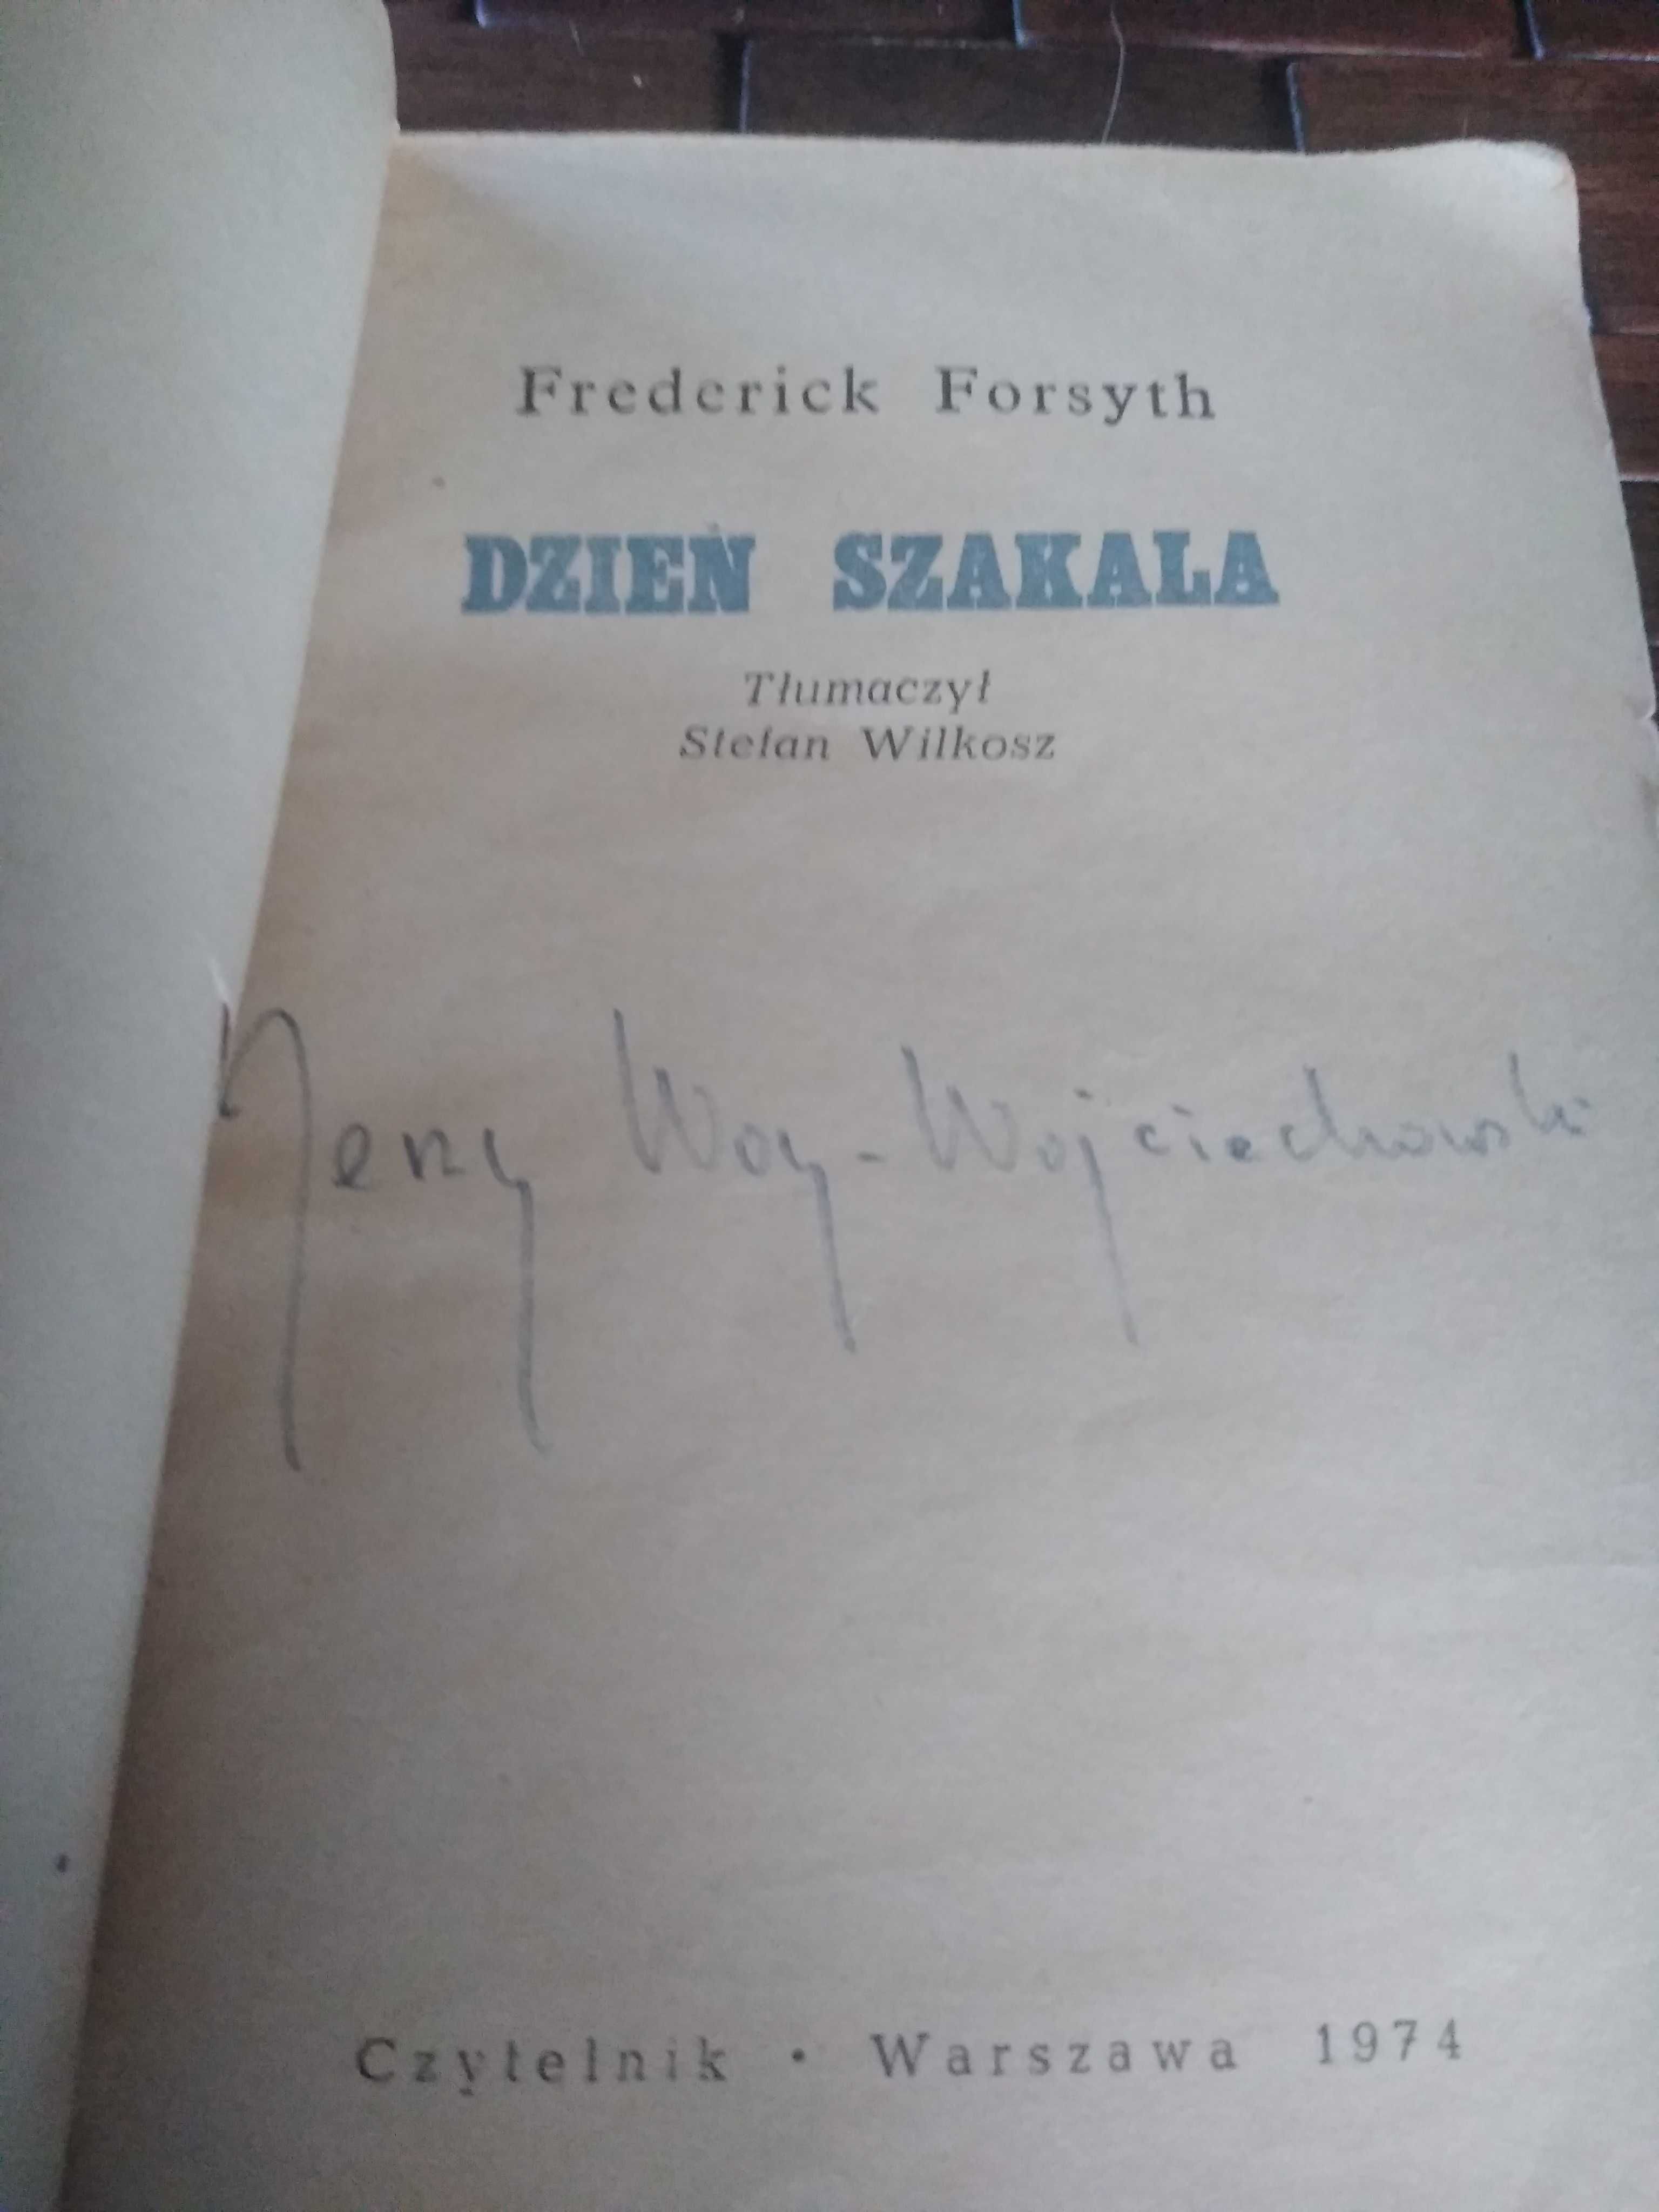 Autograf Jerzego Woy Wojciechowskiego książka dzień szakala forsyth